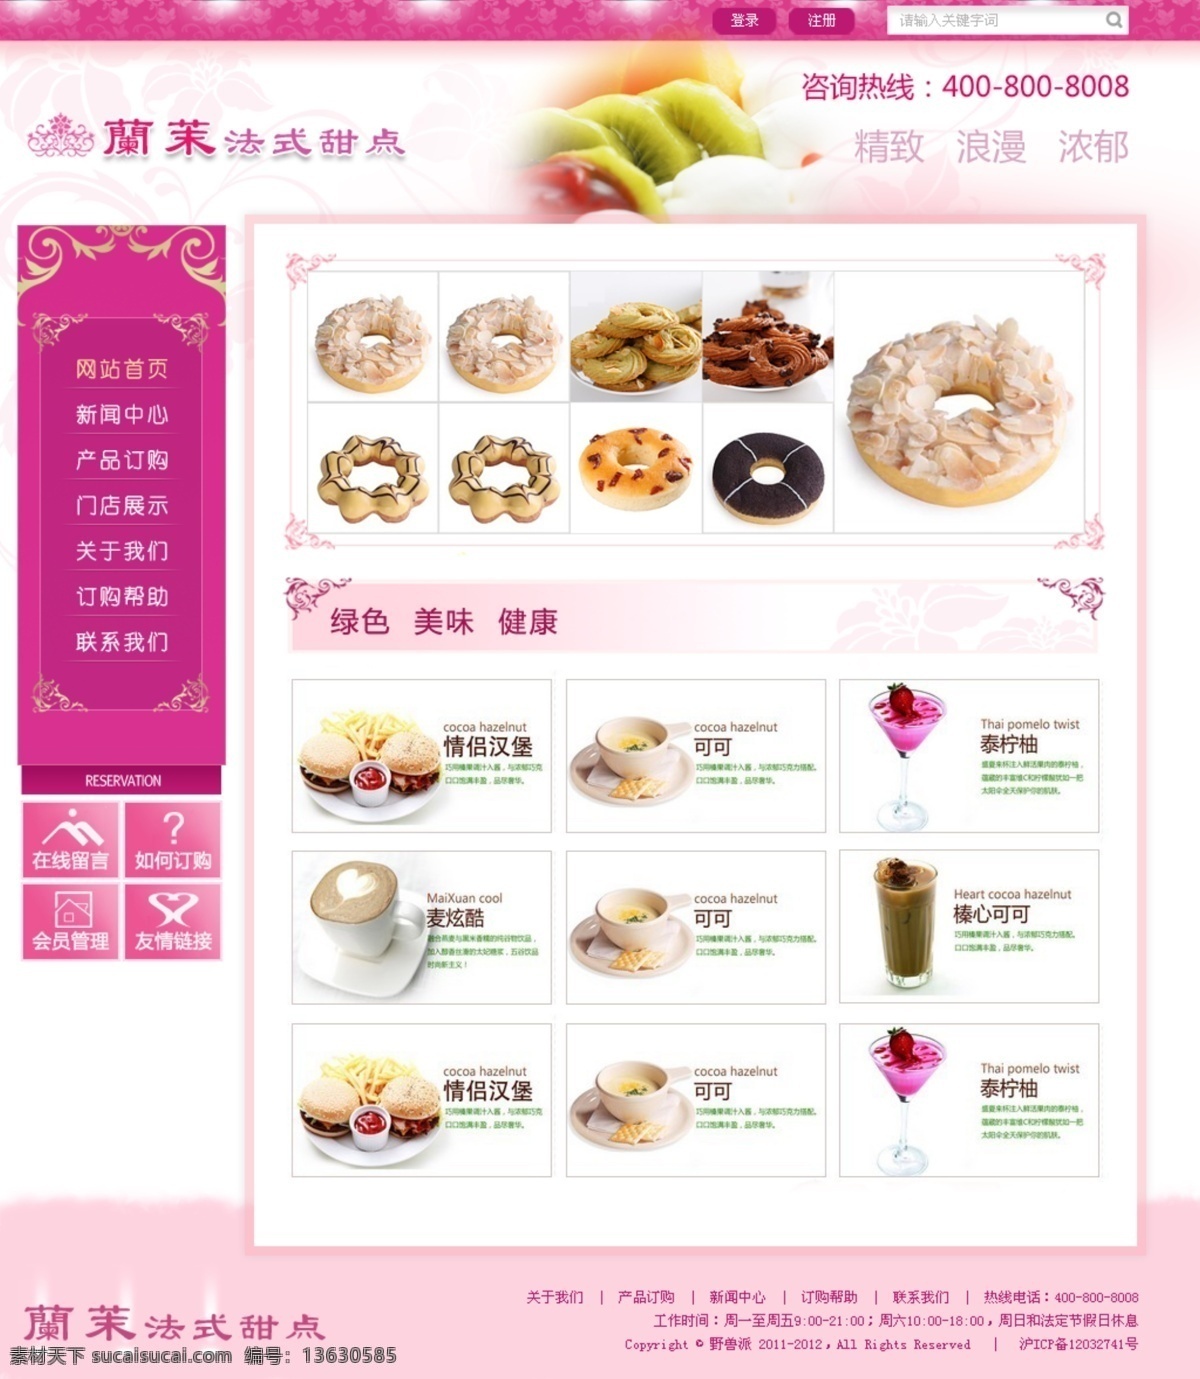 甜点免费下载 甜点 网页模板 网页制作 源文件 中文模版 公司 甜点公司 出处 黑羽网络 网页素材